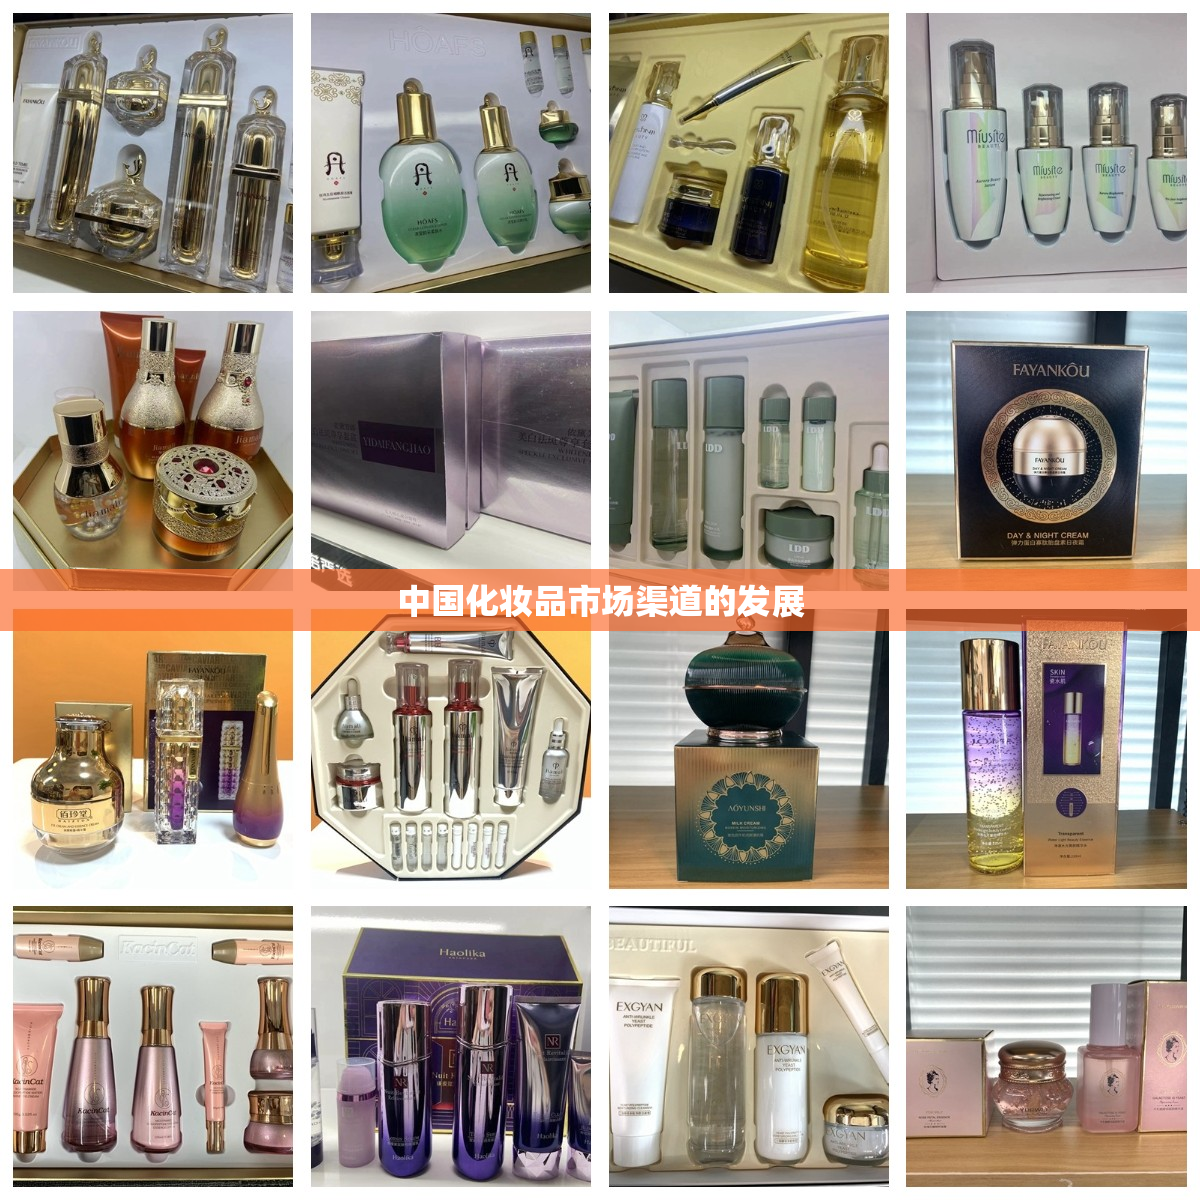 中国化妆品市场渠道的发展